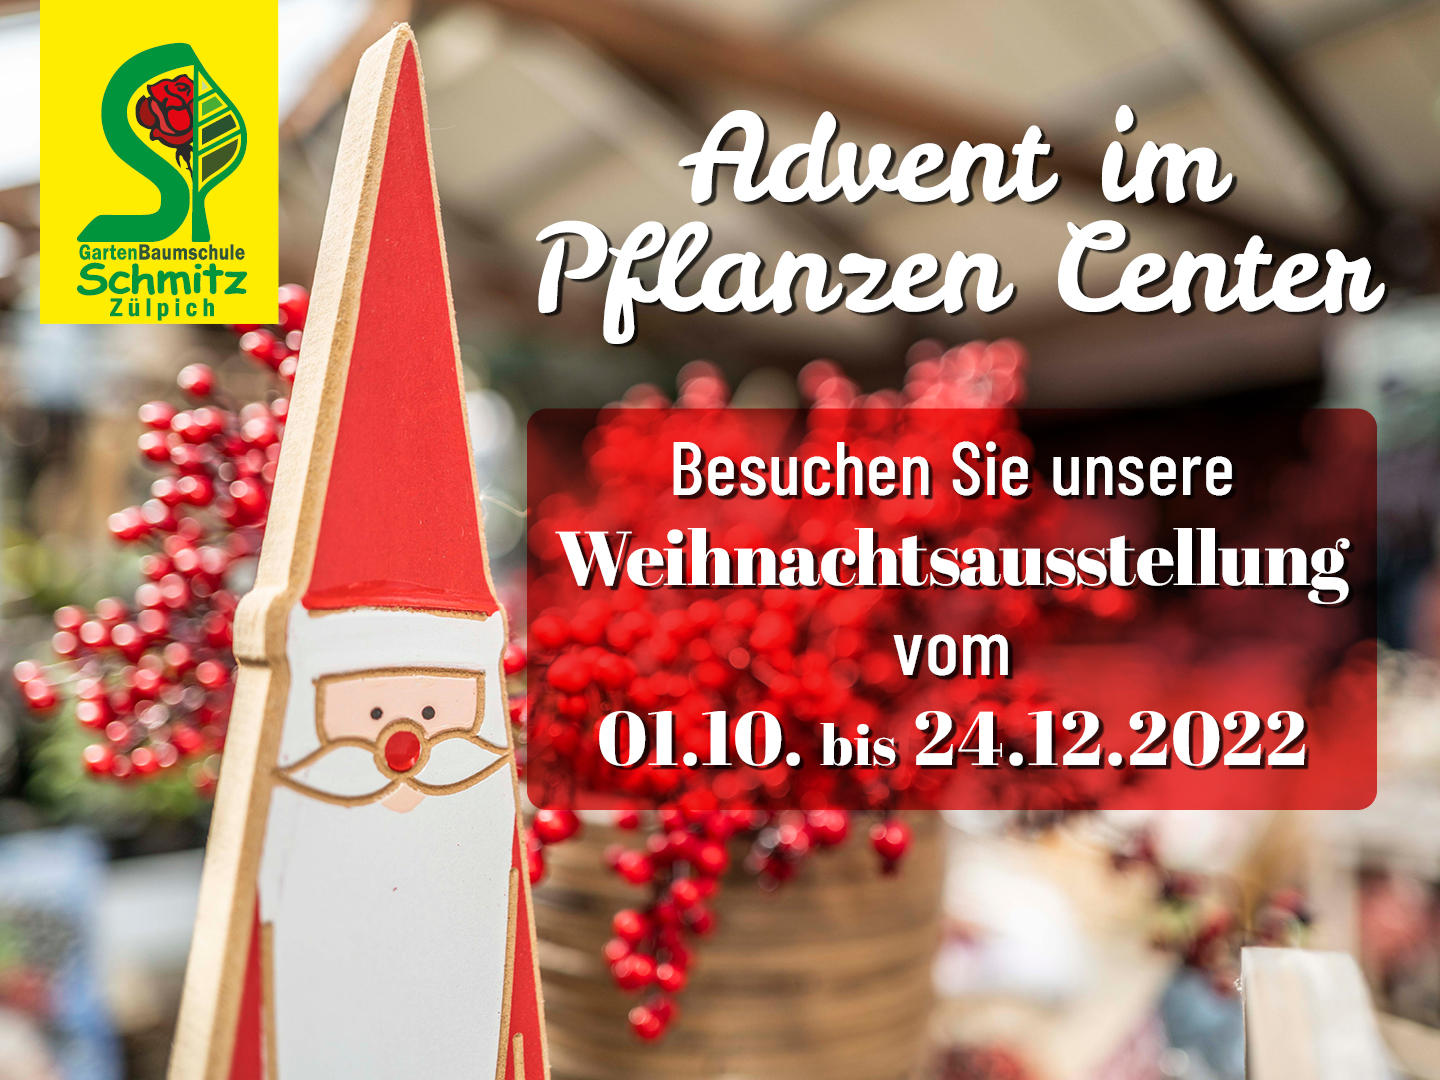 GartenBaumschule Schmitz, Zülpich, Weihnachtsausstellung 2022, Pflanzen Center Schmitz